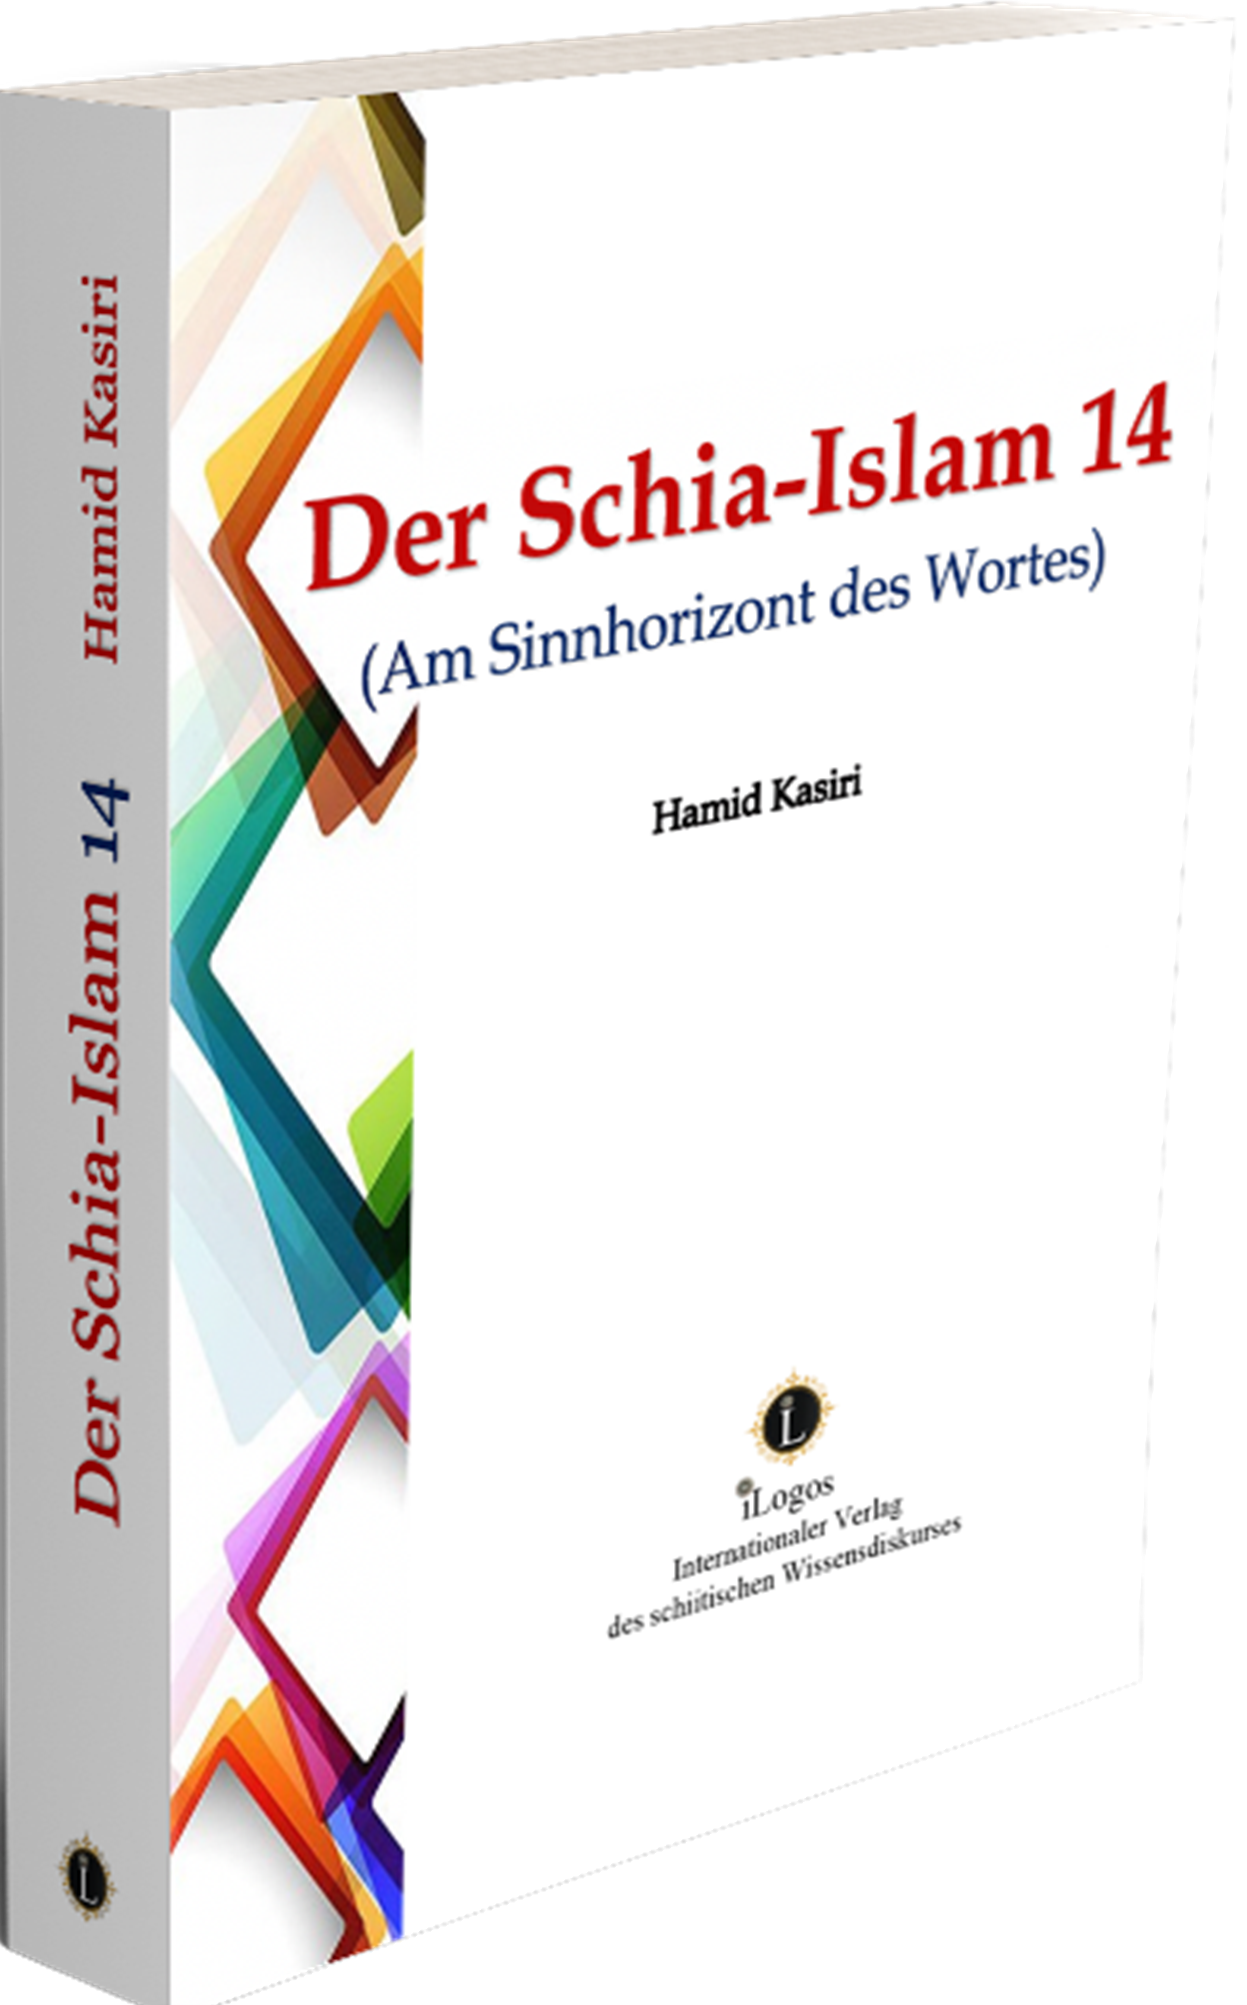 Der Schia-Islam 14 (Am Sinnhorizont des Wortes)